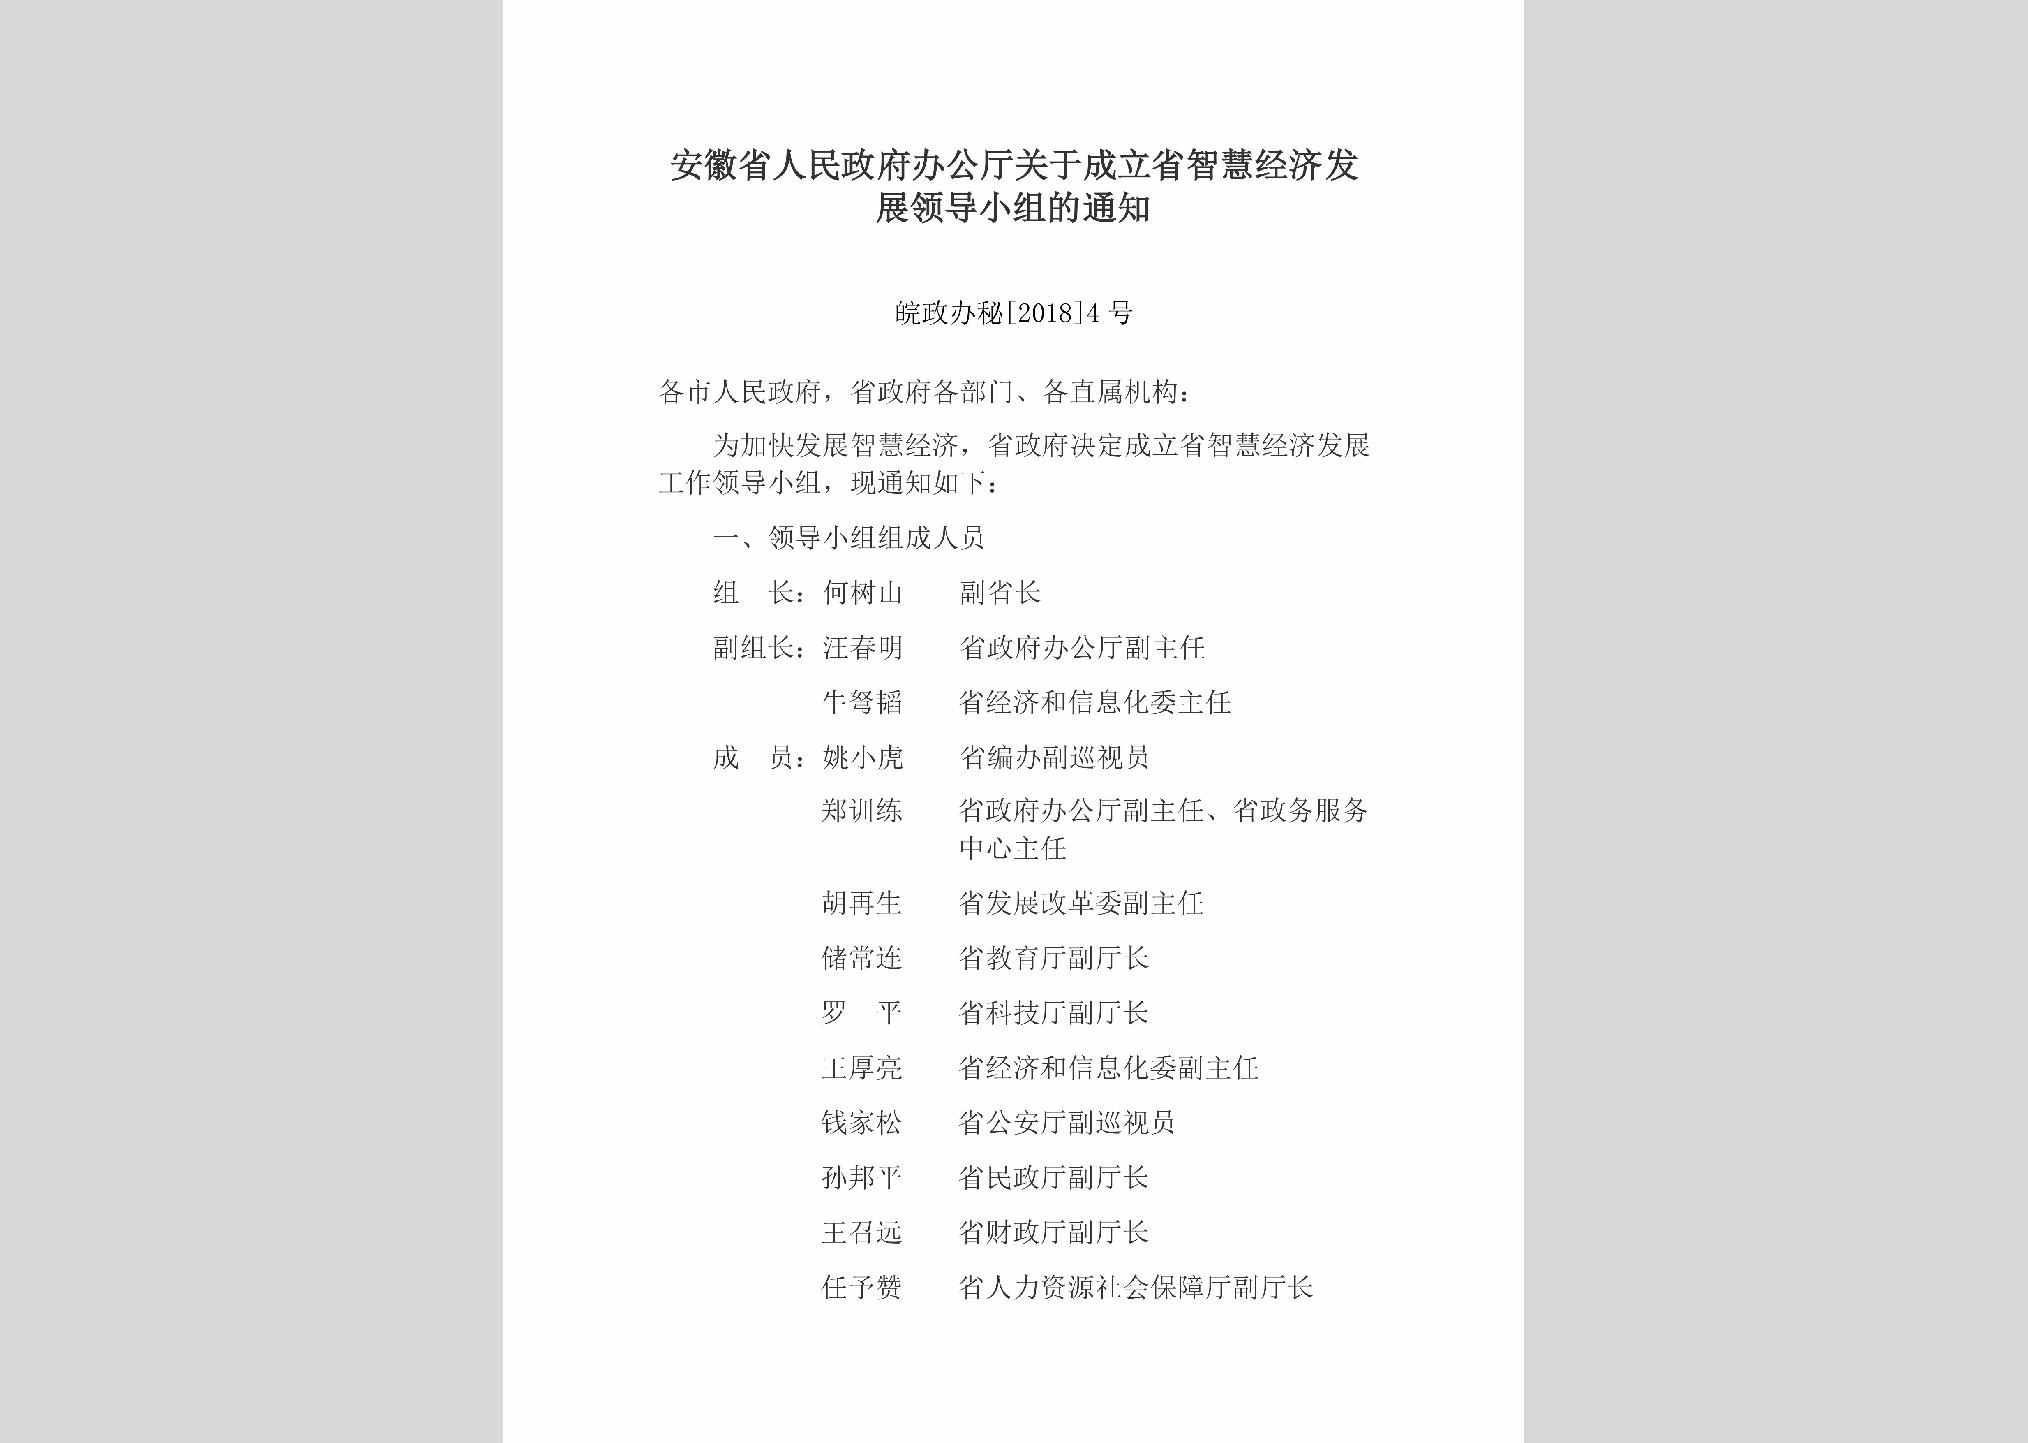 皖政办秘[2018]4号：安徽省人民政府办公厅关于成立省智慧经济发展领导小组的通知